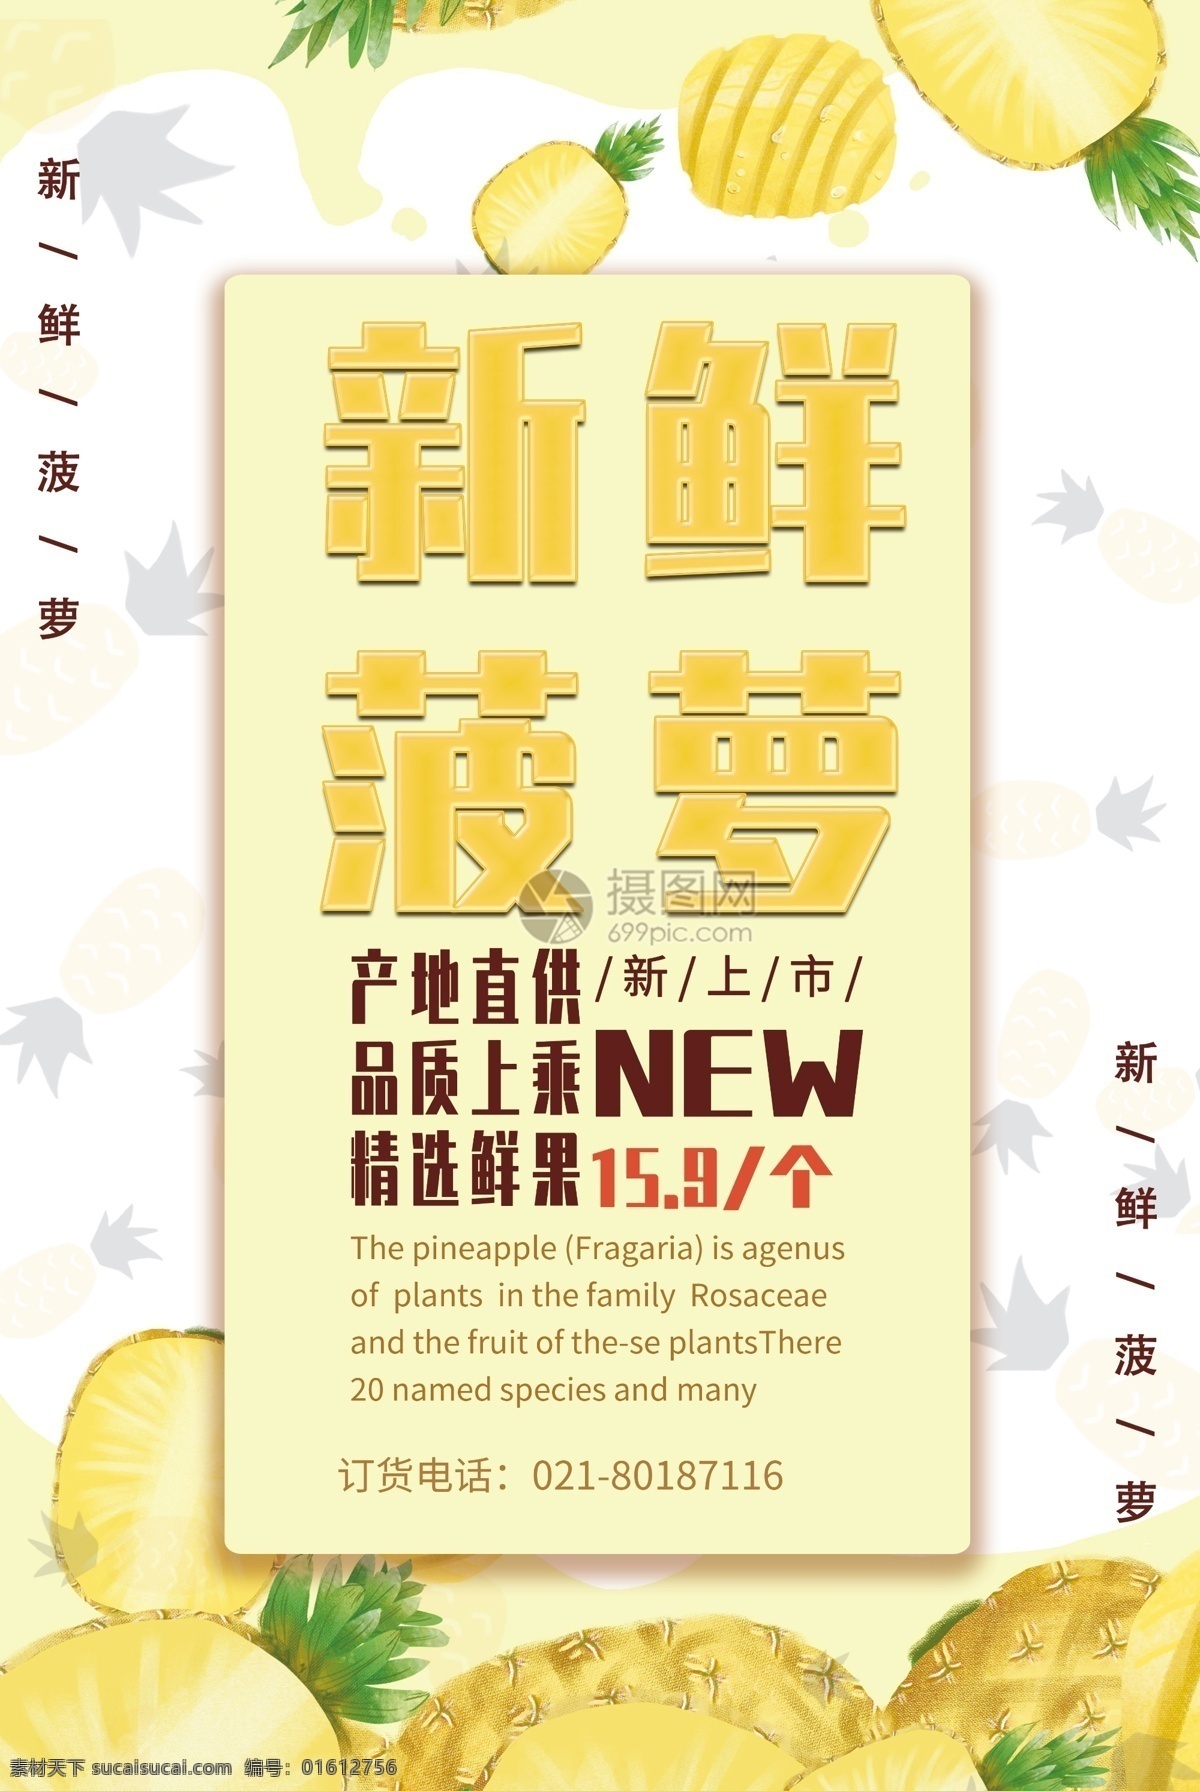 新鲜 菠萝 凤梨 促销 海报 小清新风 季节水果 宣传 黄色 底纹 插画 留白 背景 菠萝海报